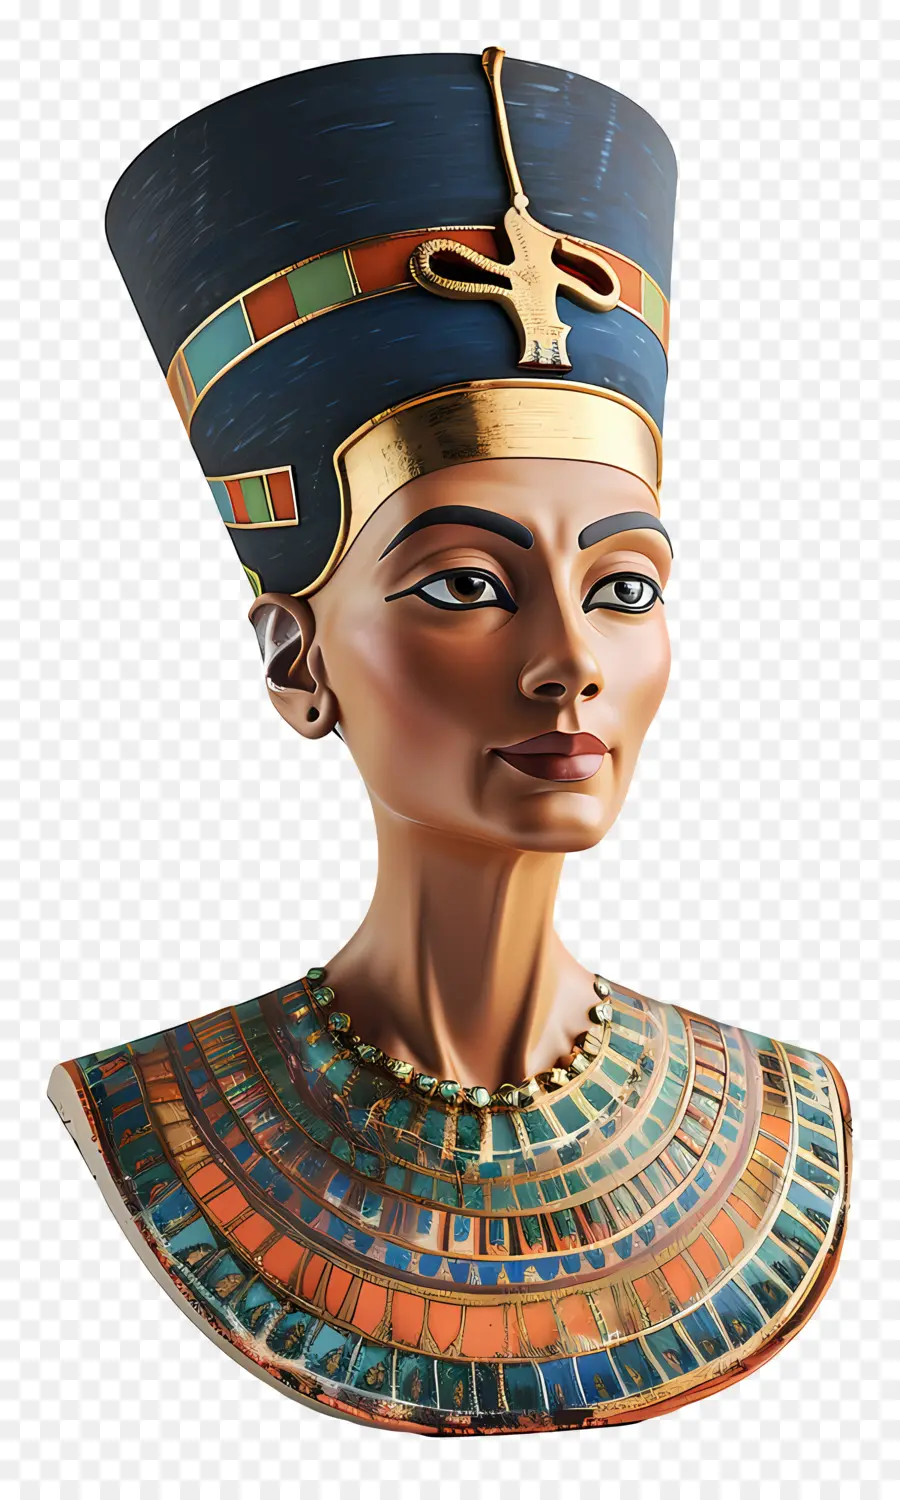 bust of nefertiti egyptian woman portrait intricate ornate style high cheekbones almond-shaped eyes